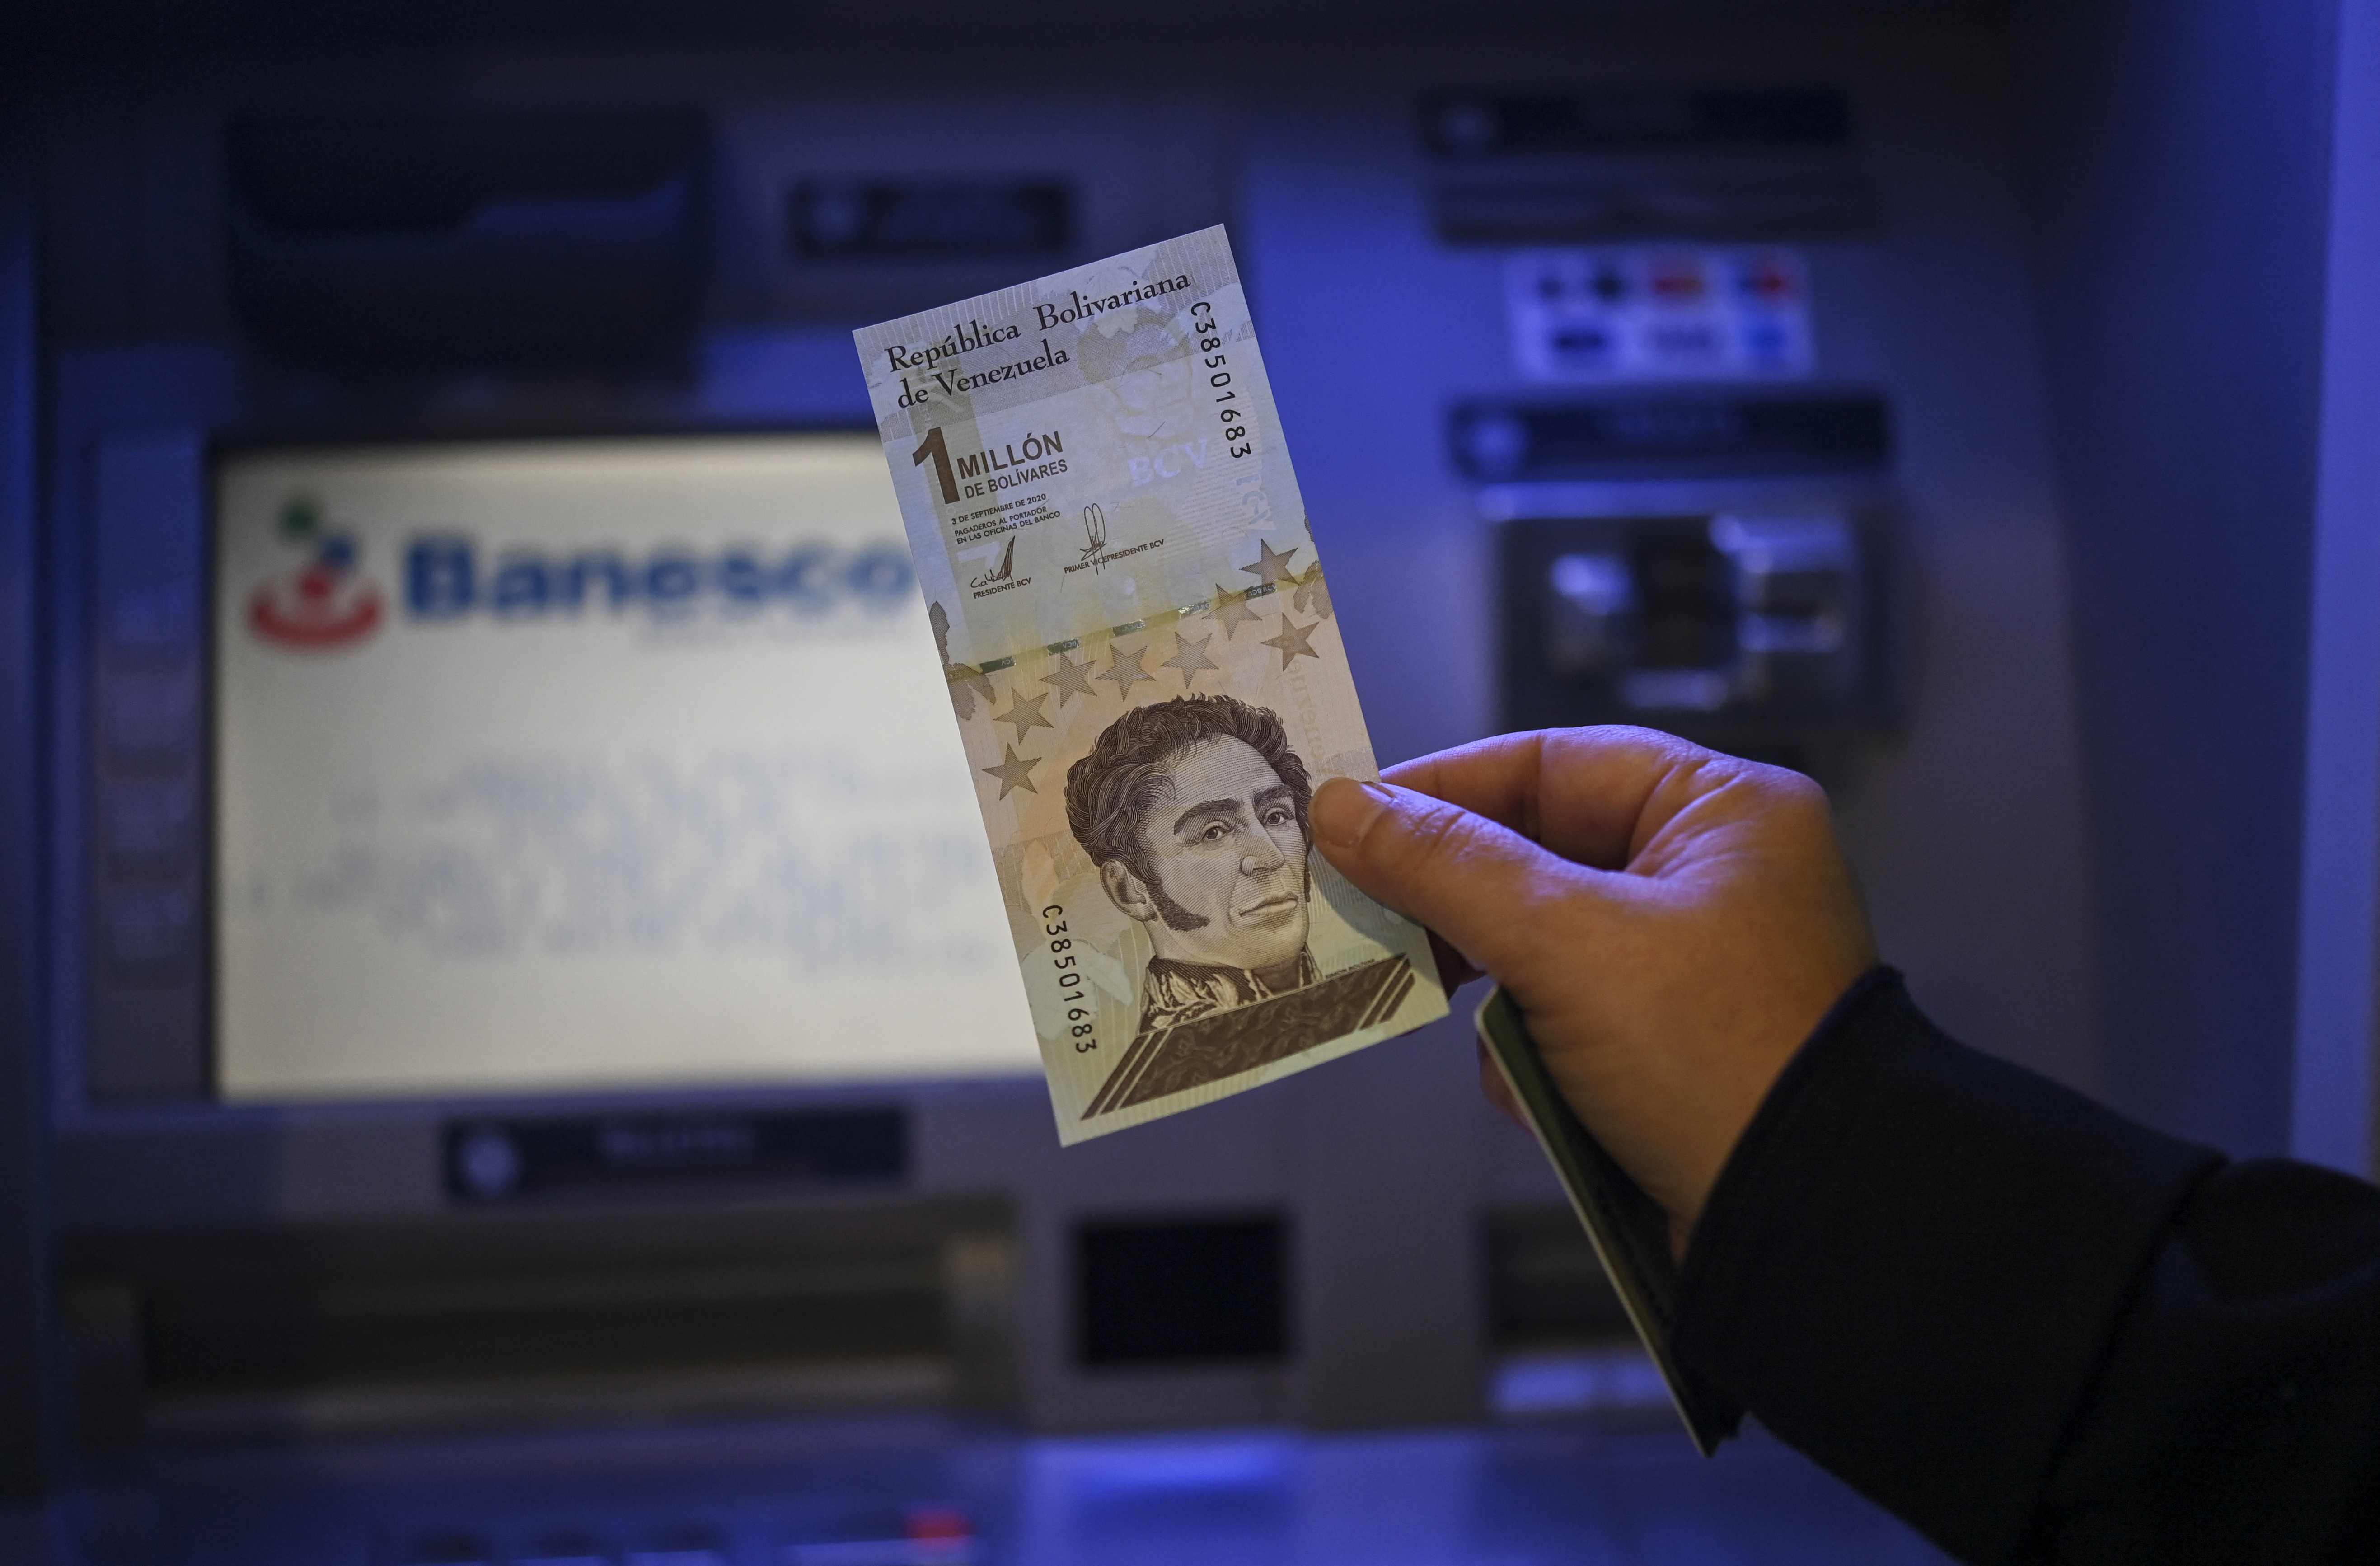 El efectivo en bolívares solo quedó para el pasaje pese a la nueva reconversión, según experto